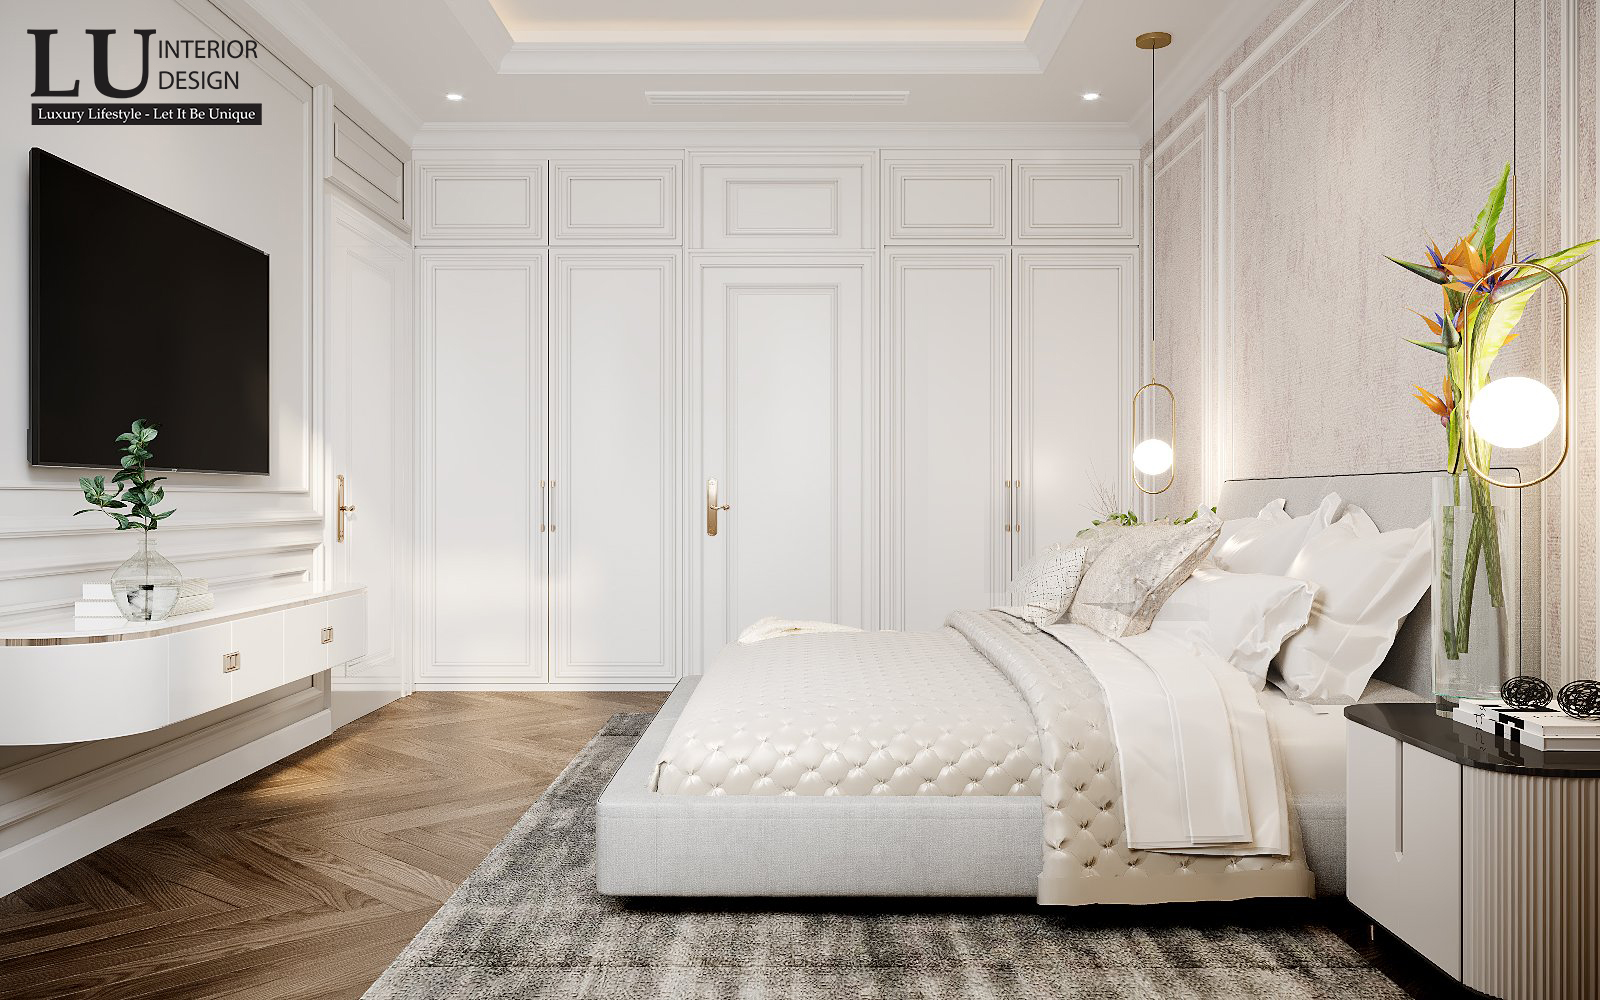 "Thiết kế phòng ngủ giản dị nhưng rất chọn lọc trong việc sắp xếp những món nội thất.